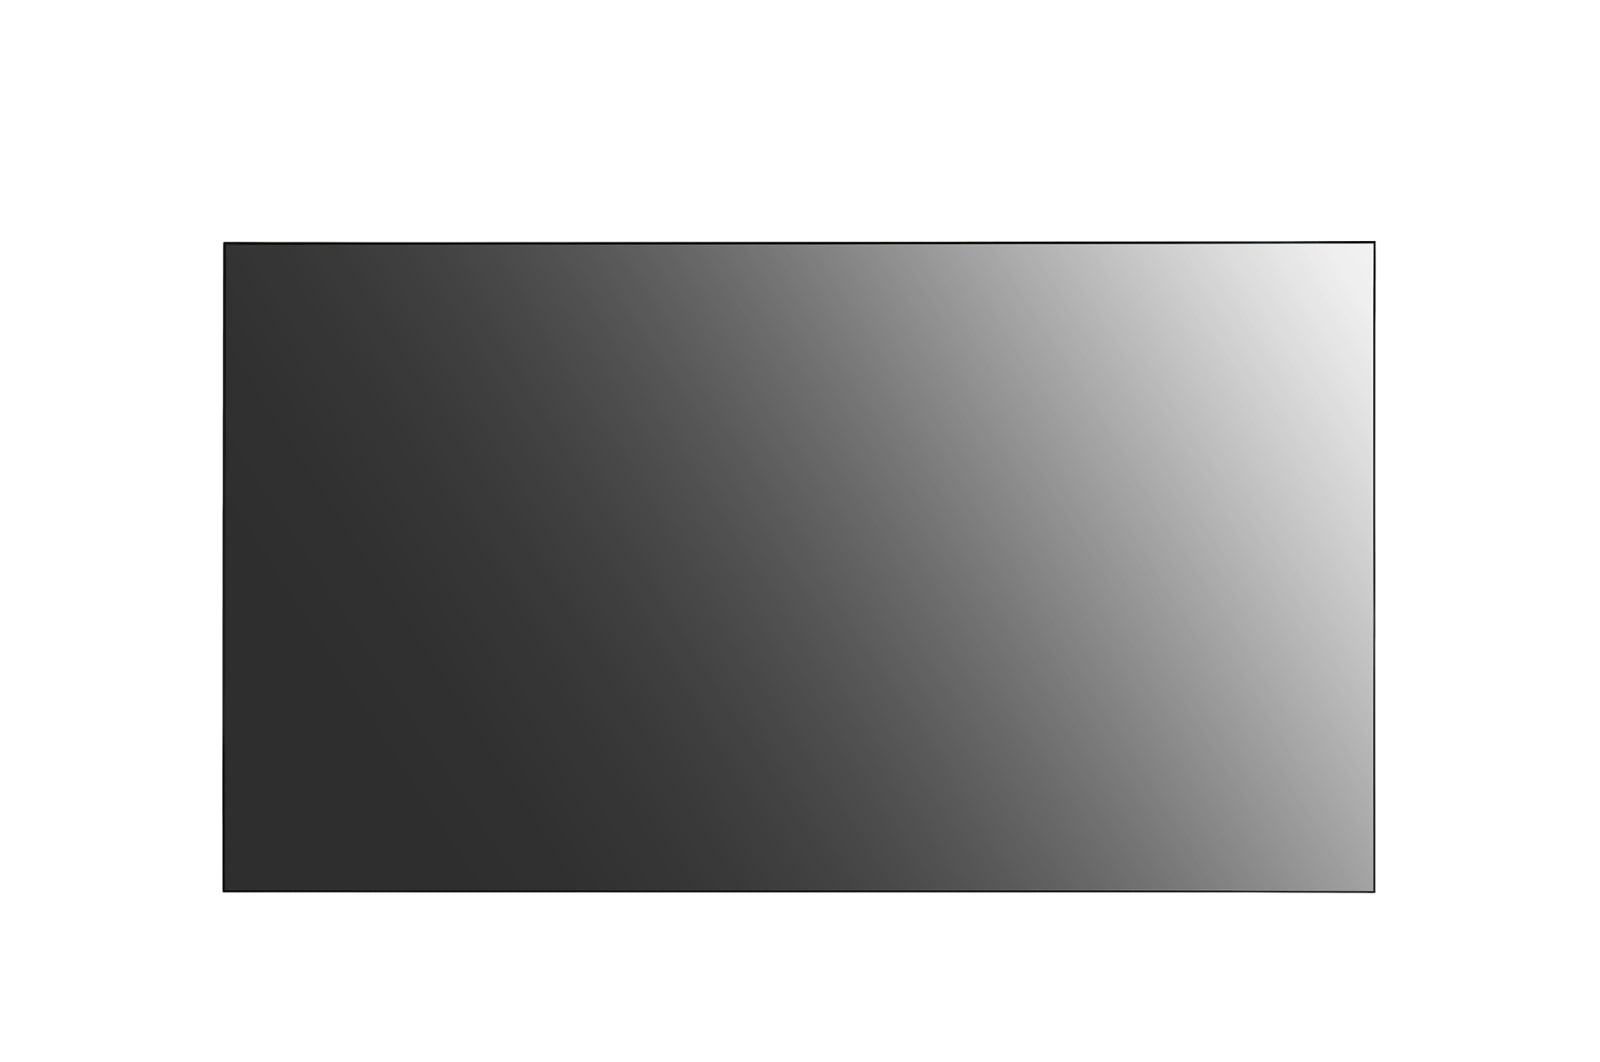 LG 49VL5G pantalla de señalización Pantalla plana para señalización digital 124,5 cm (49") Full HD Negro